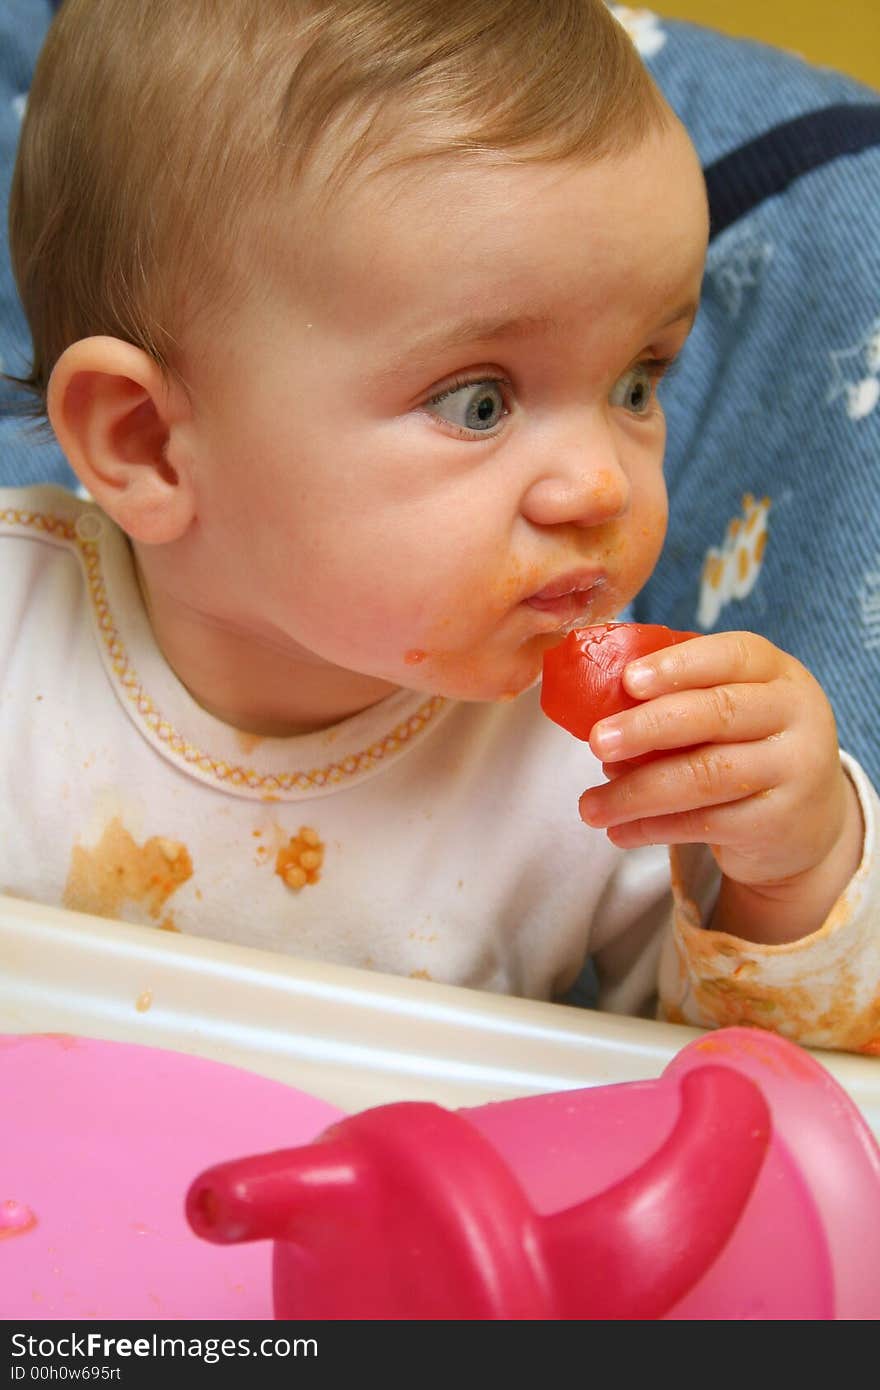 A baby is eating lunch. A baby is eating lunch.